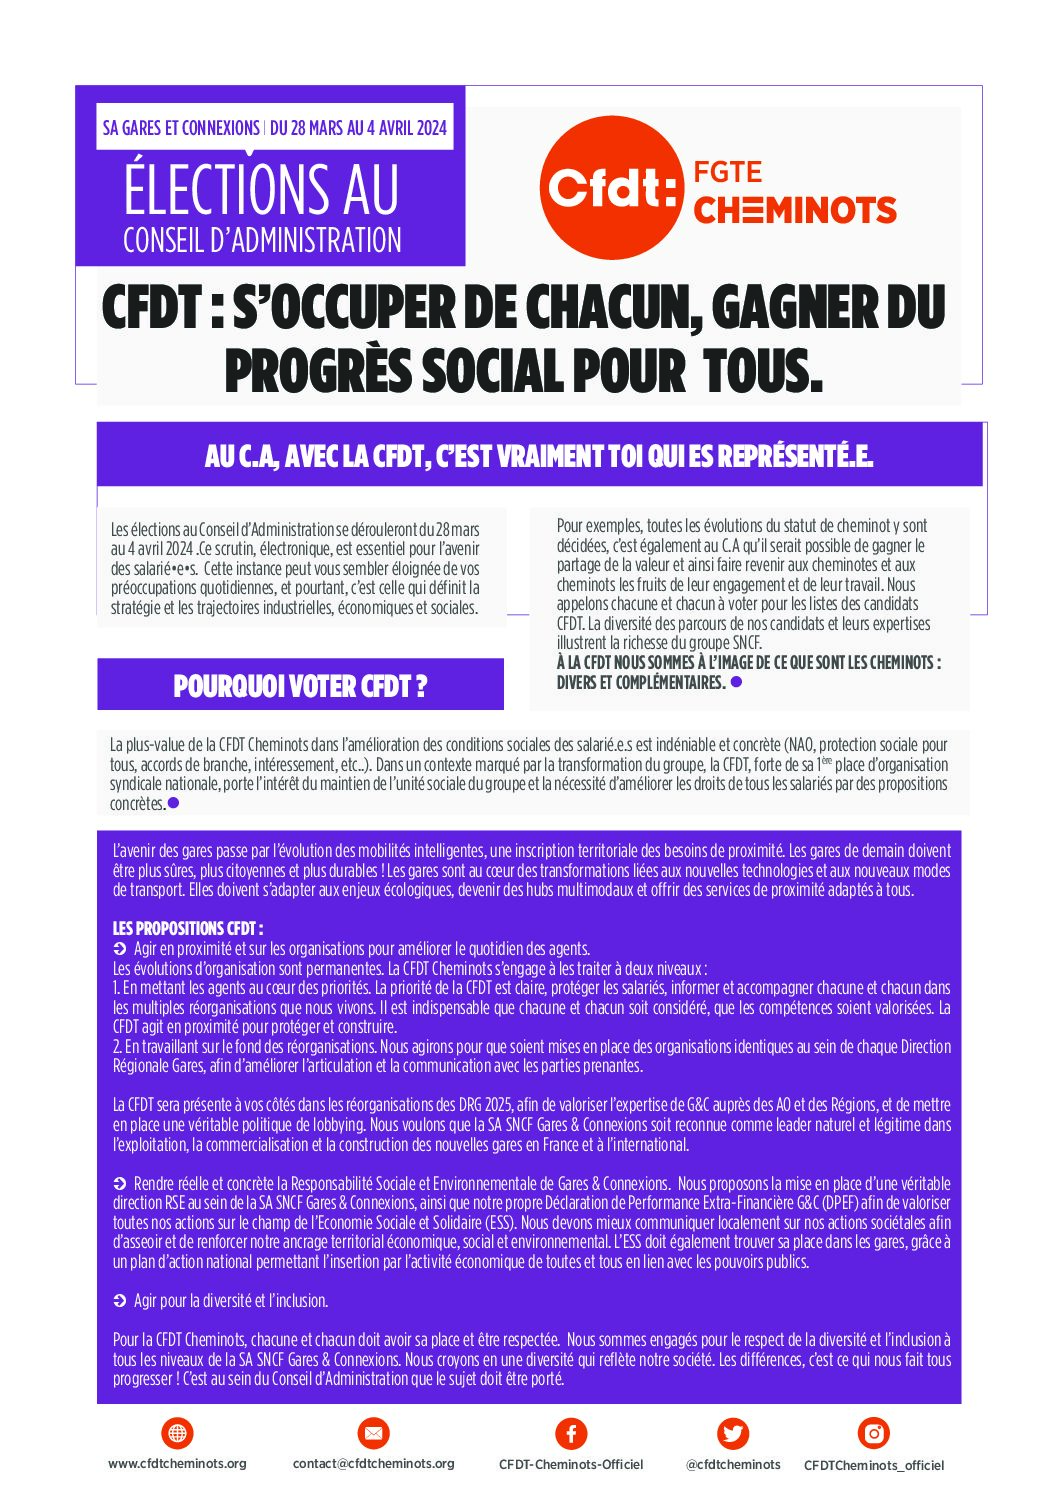 Élections C.A 2024: profession de fois SA SNCF Gares & Connexions